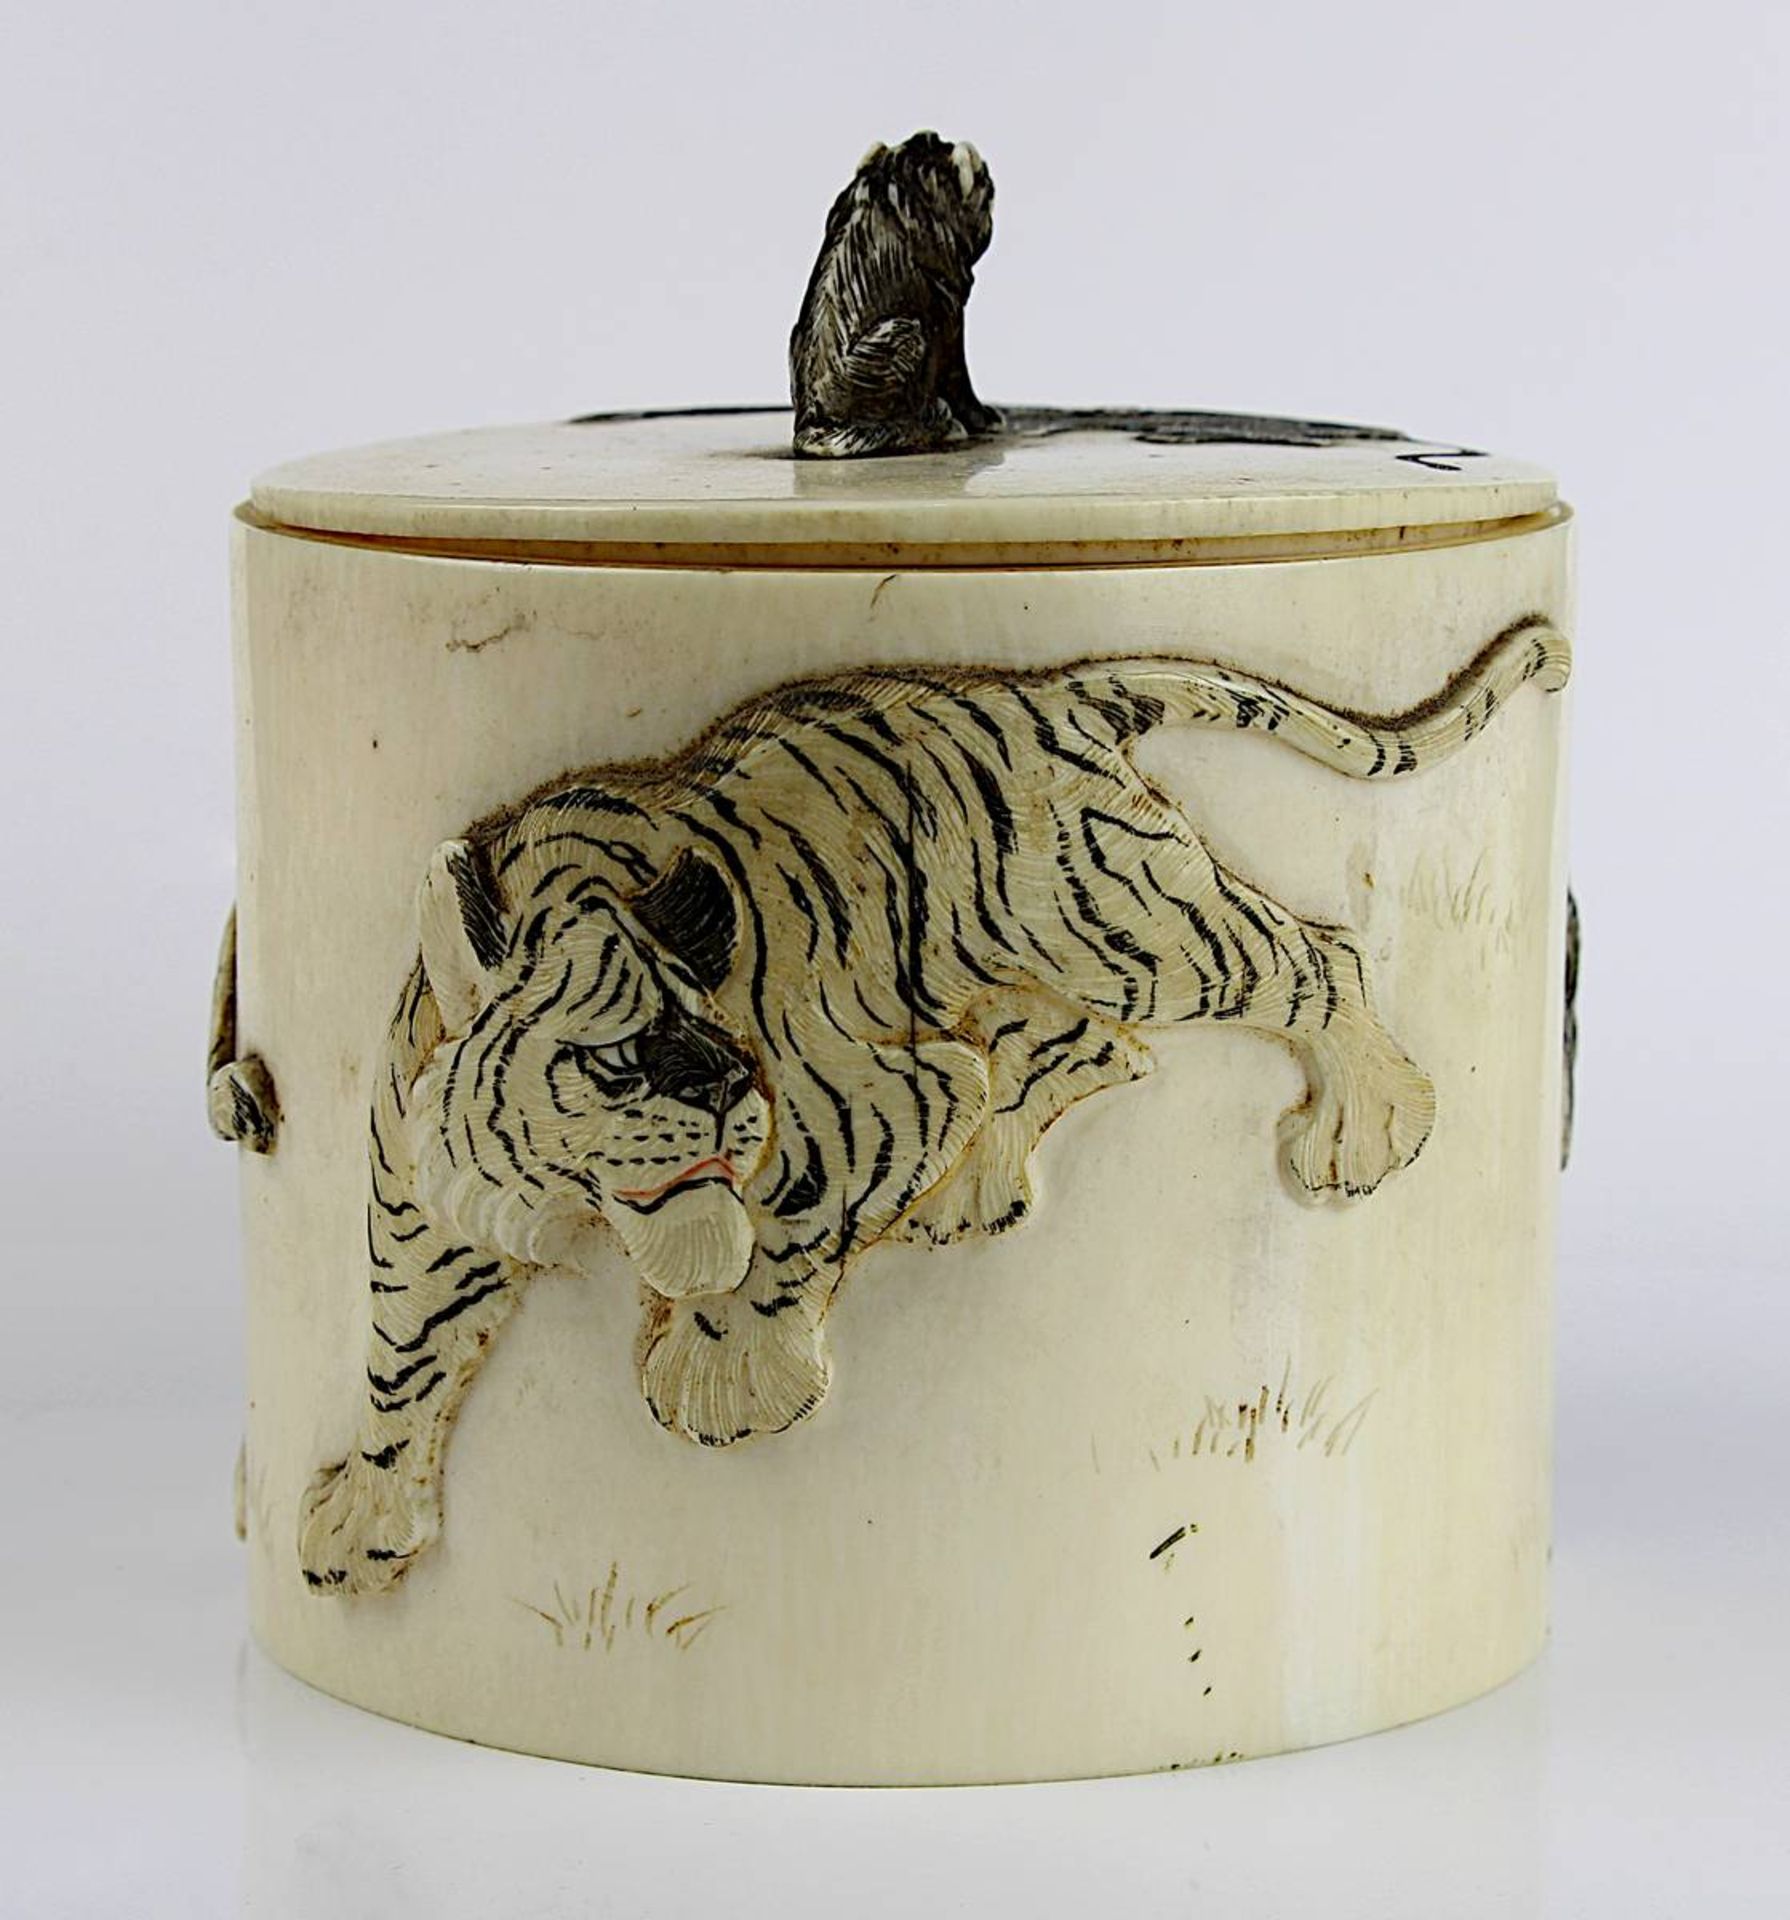 Japanische Elfenbein-Dose mit Tigermotiven, späte Edo-Zeit, zylindrische Form, Deckel und Wandung - Image 7 of 7